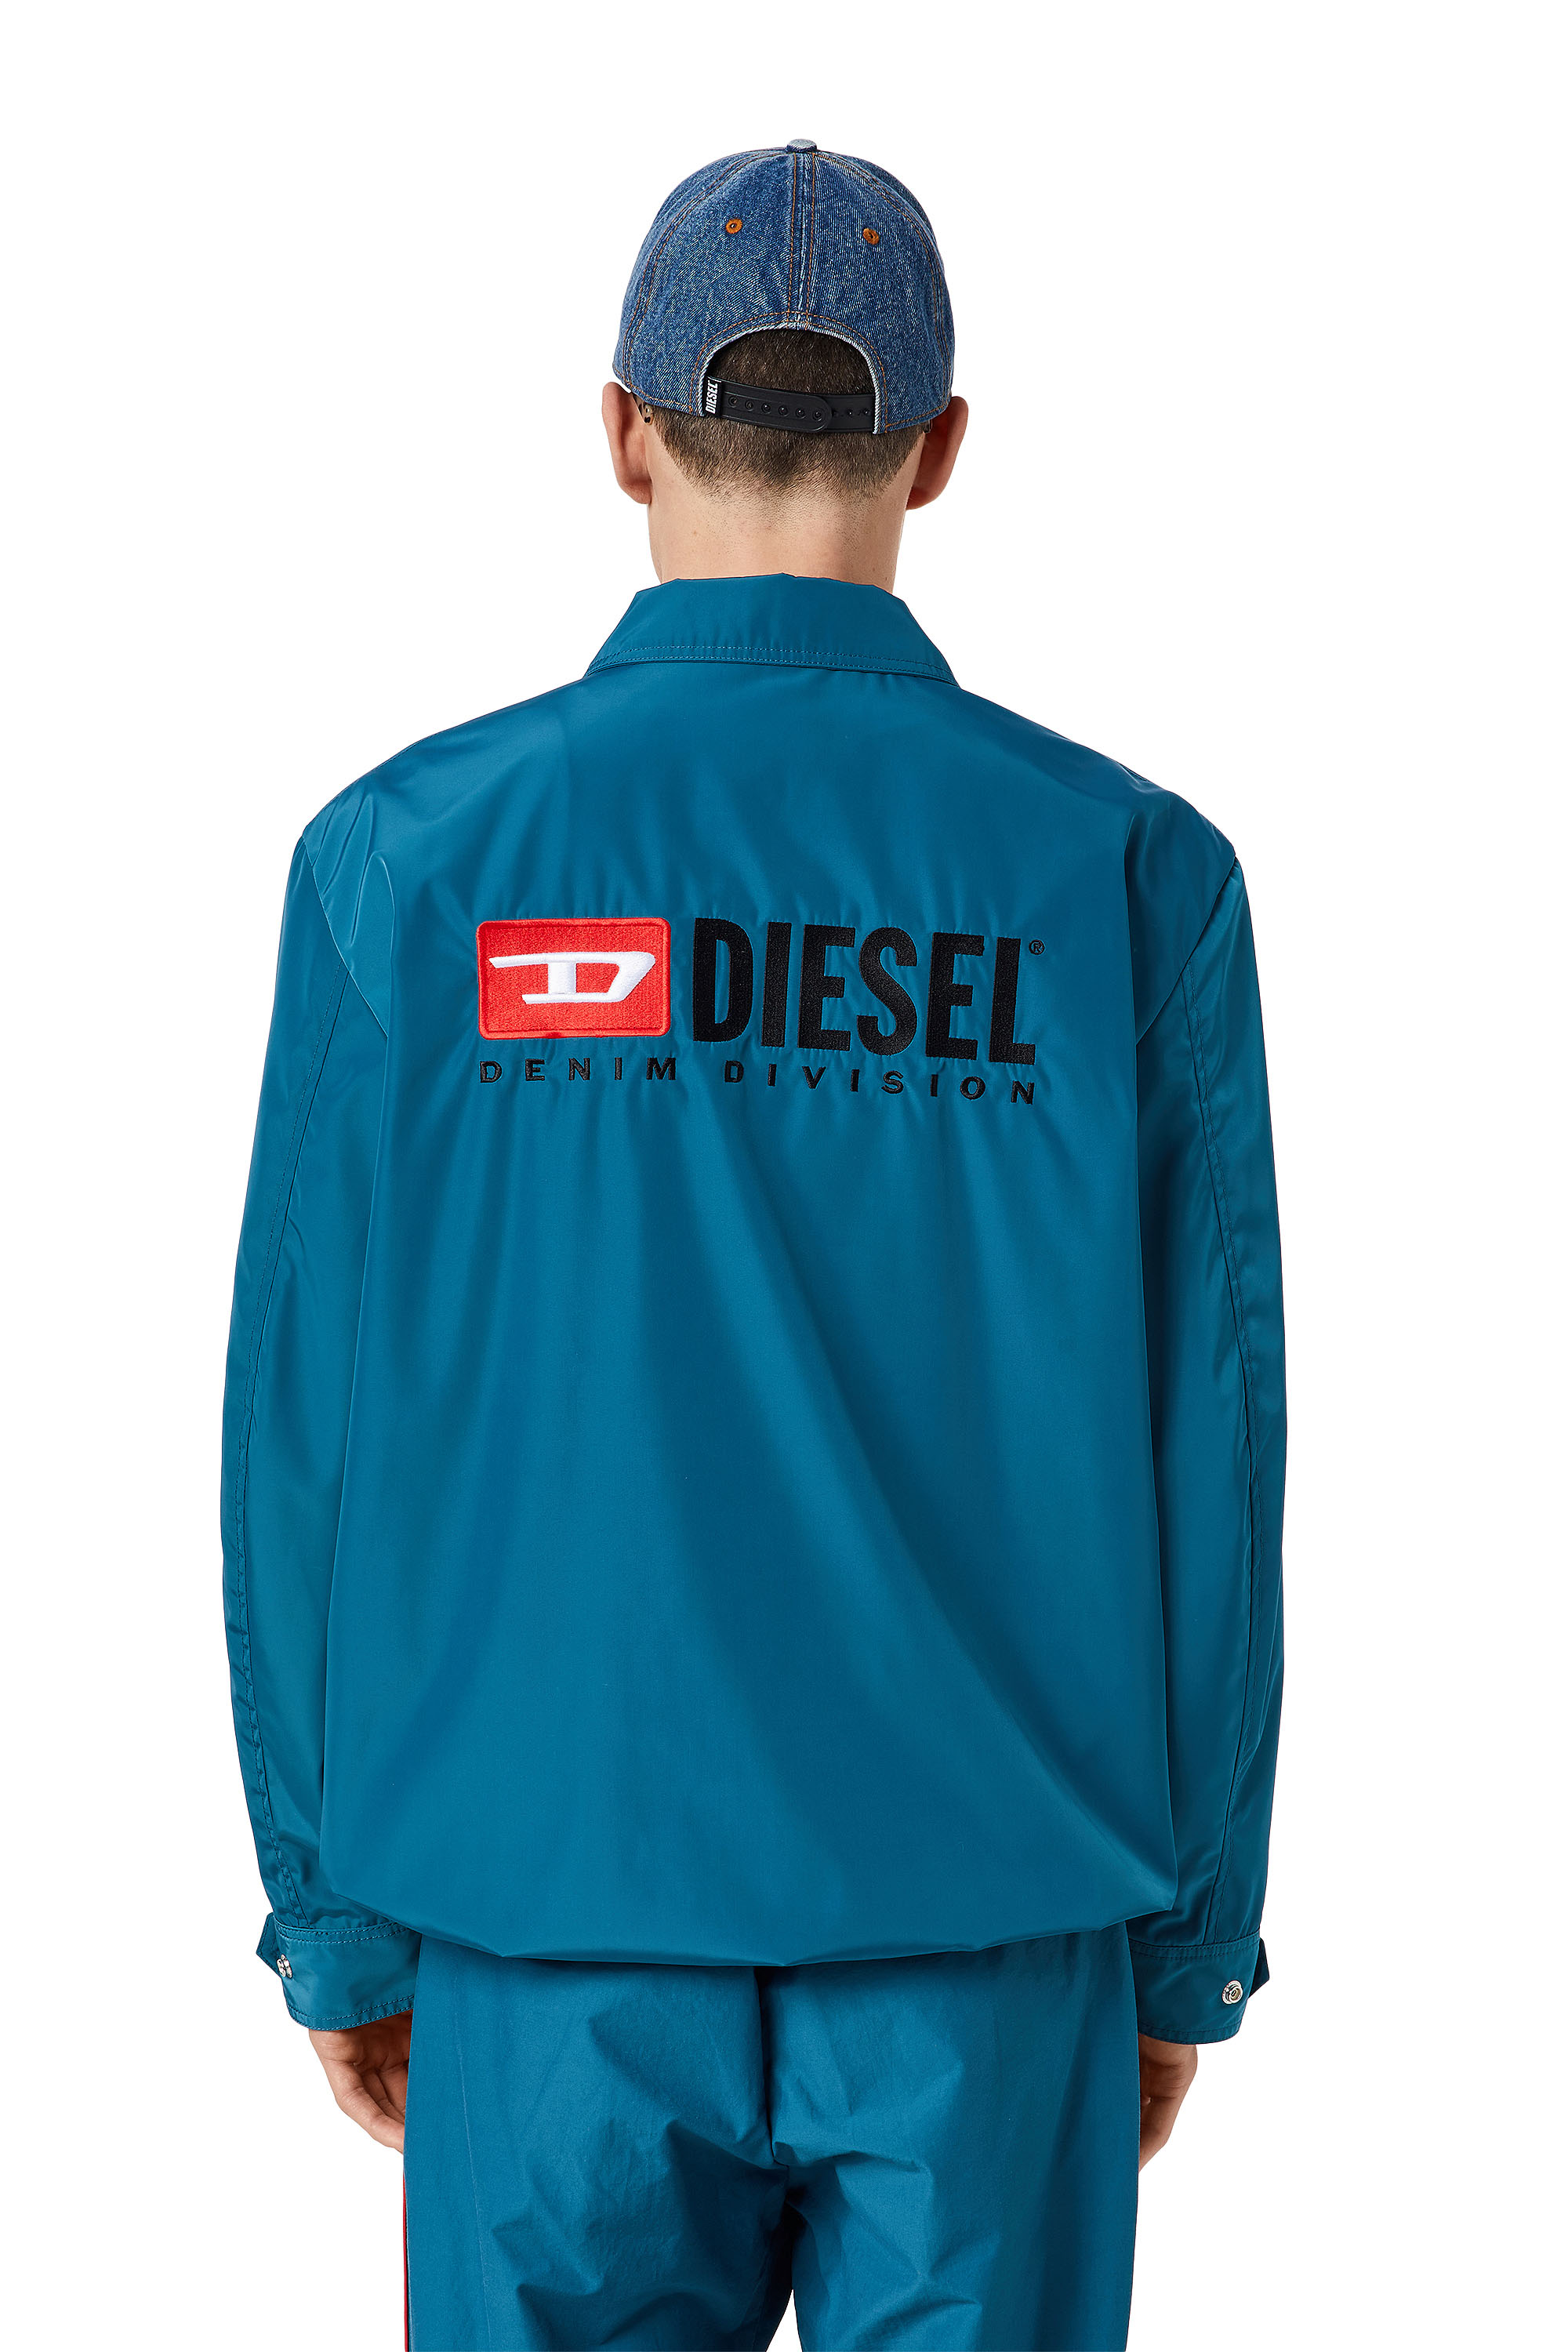 Diesel - J-COAL-NP, Blue - Image 3